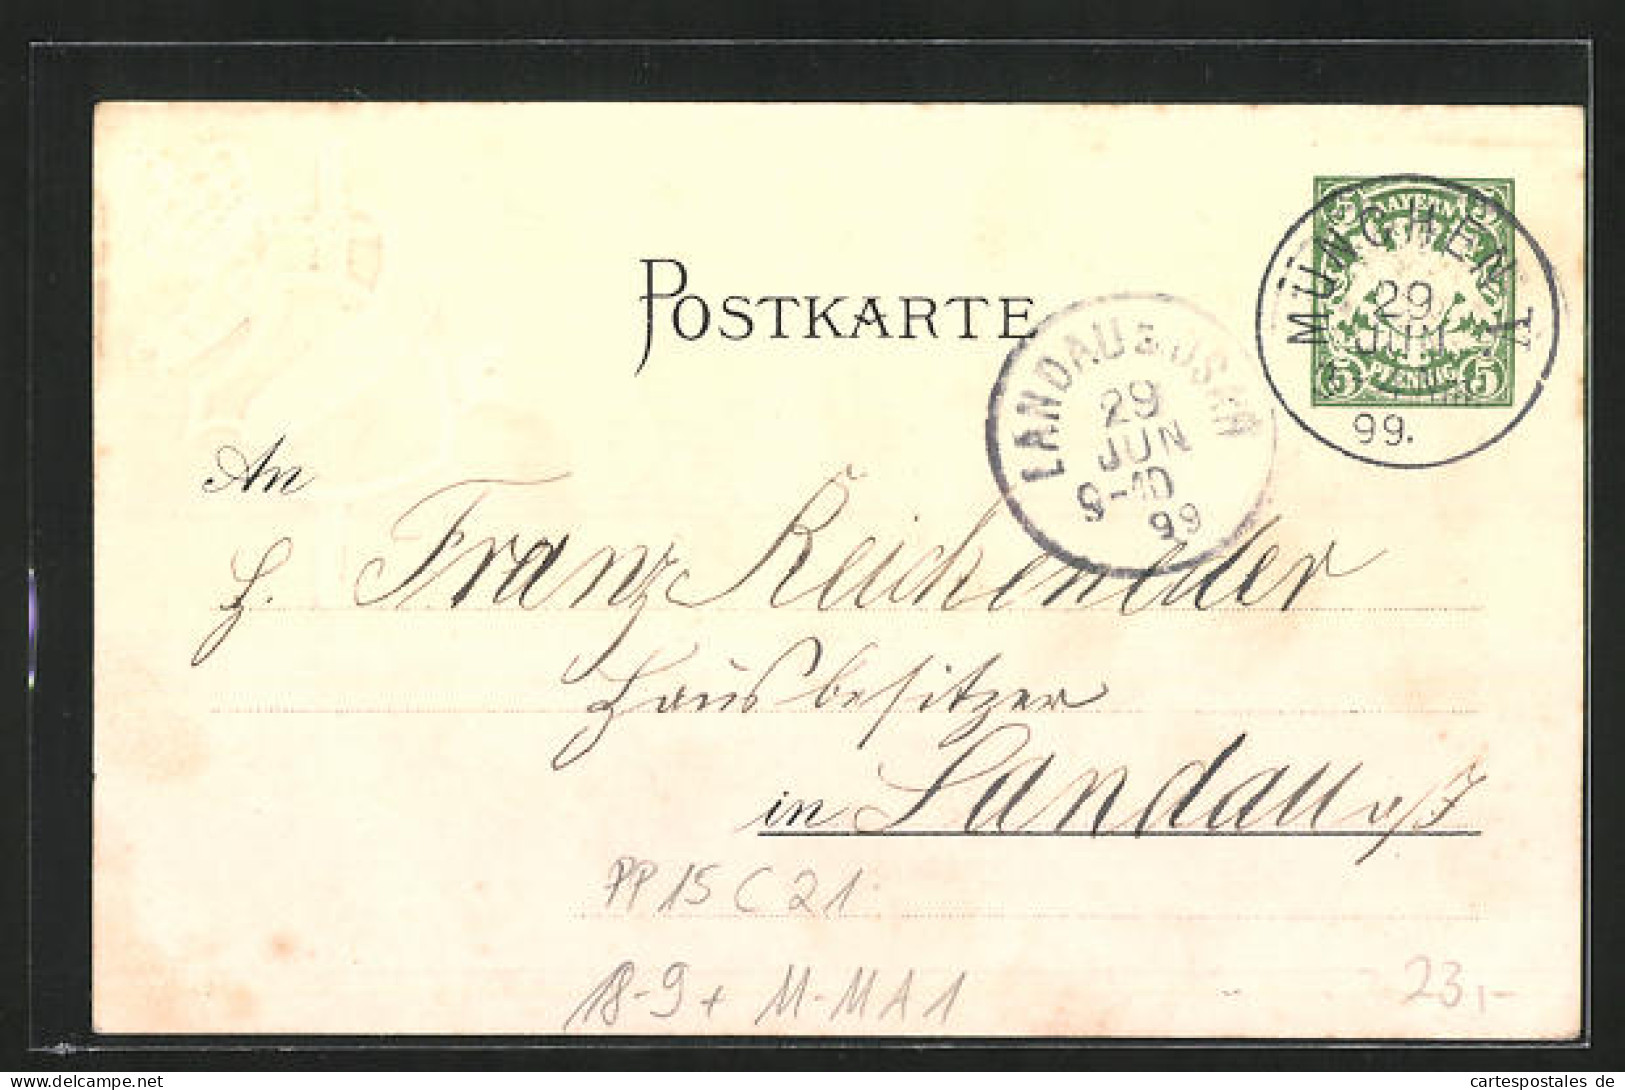 Präge-Lithographie München, 25. Bundesjubiläum Bayrischer-Veteranen-Krieger U. Kampfgenossen-Bund, PP 15 C 21, Ganz  - Postkarten